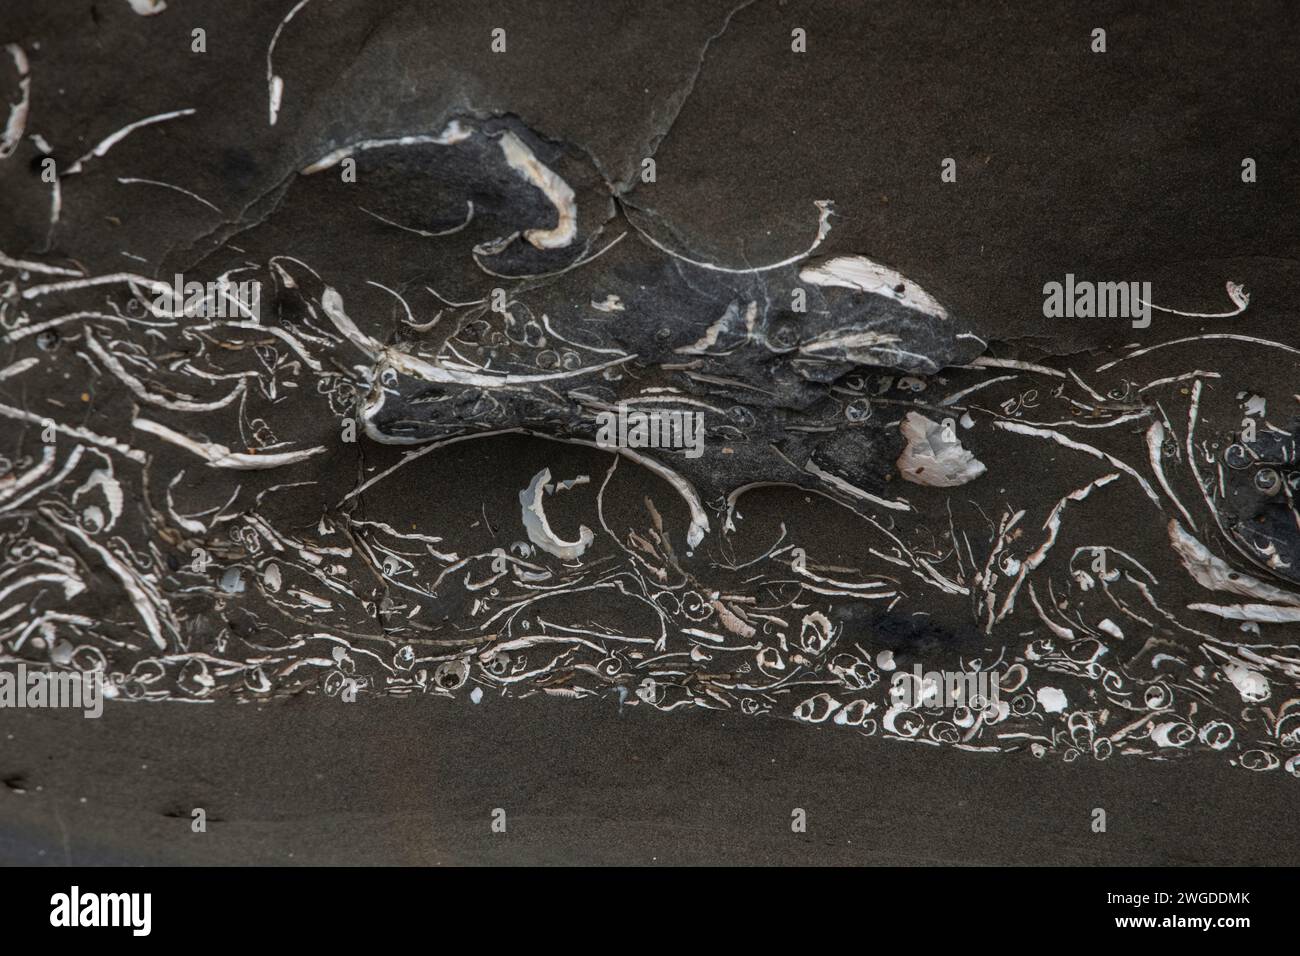 Une couche de palourdes et de gastéropodes marins fossilisés le long de la côte californienne, les fossiles anciens sont incrustés dans la roche. Banque D'Images